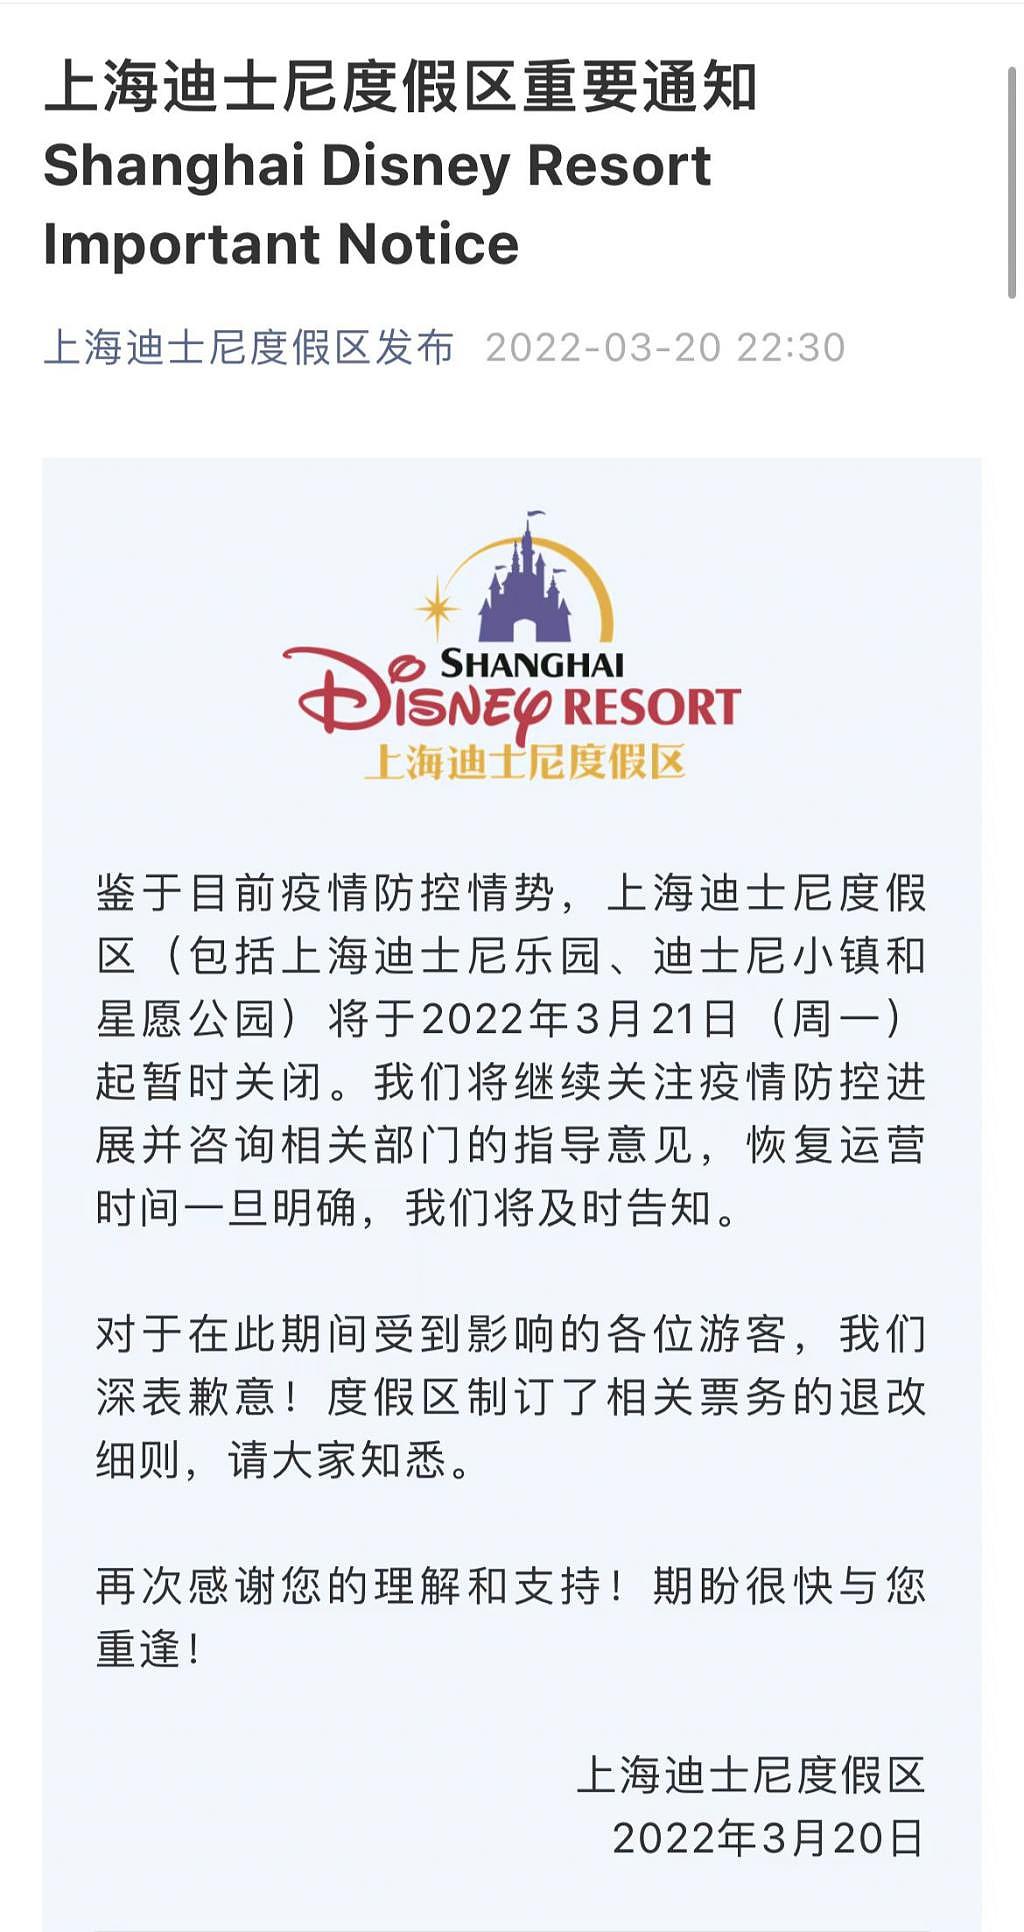 上海迪士尼度假区 3 月 21 日起暂时关闭 - 1